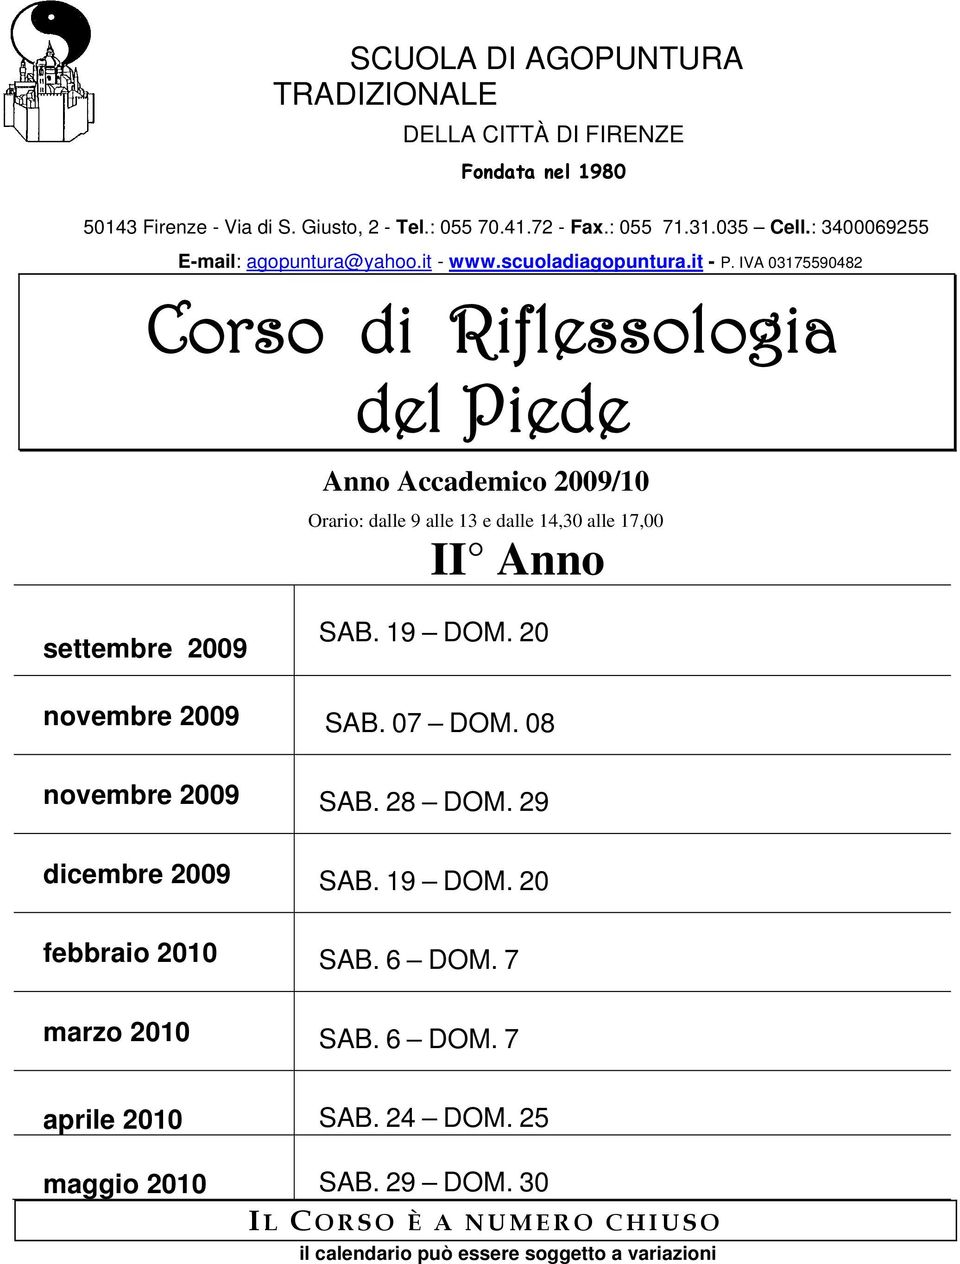 IVA 03175590482 Corso di Riflessologia del Piede Anno Accademico 2009/10 Orario: dalle 9 alle 13 e dalle 14,30 alle 17,00 II Anno settembre 2009 SAB. 19 DOM.